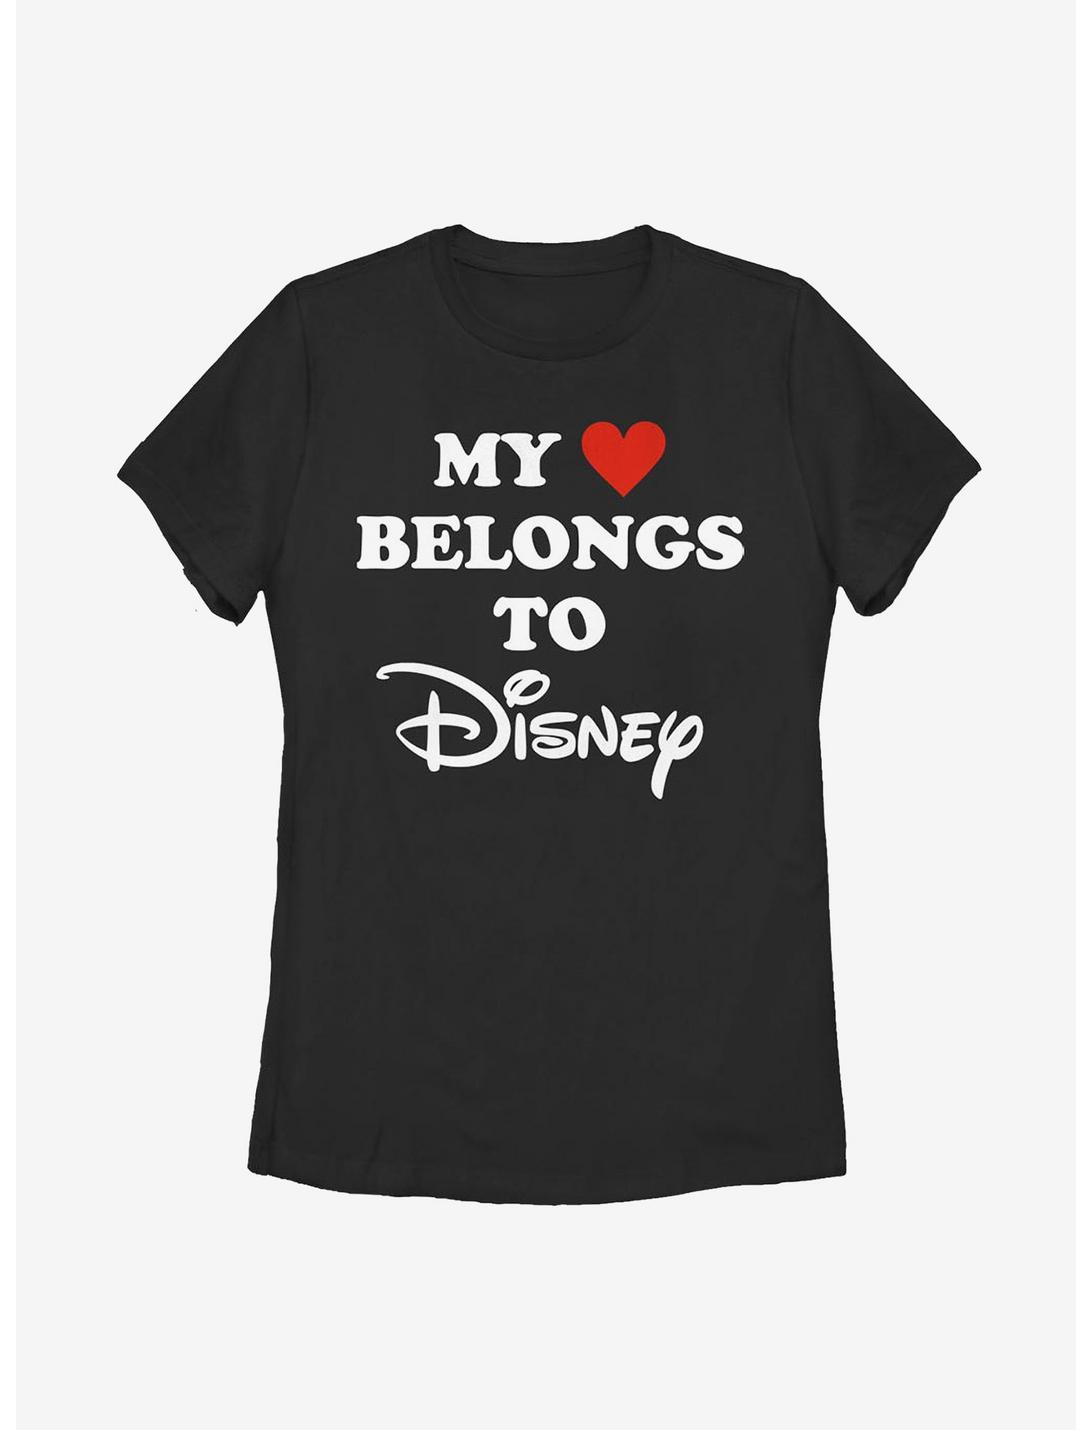 Disney Classic I Heart Disney Womens T-Shirt, BLACK, hi-res